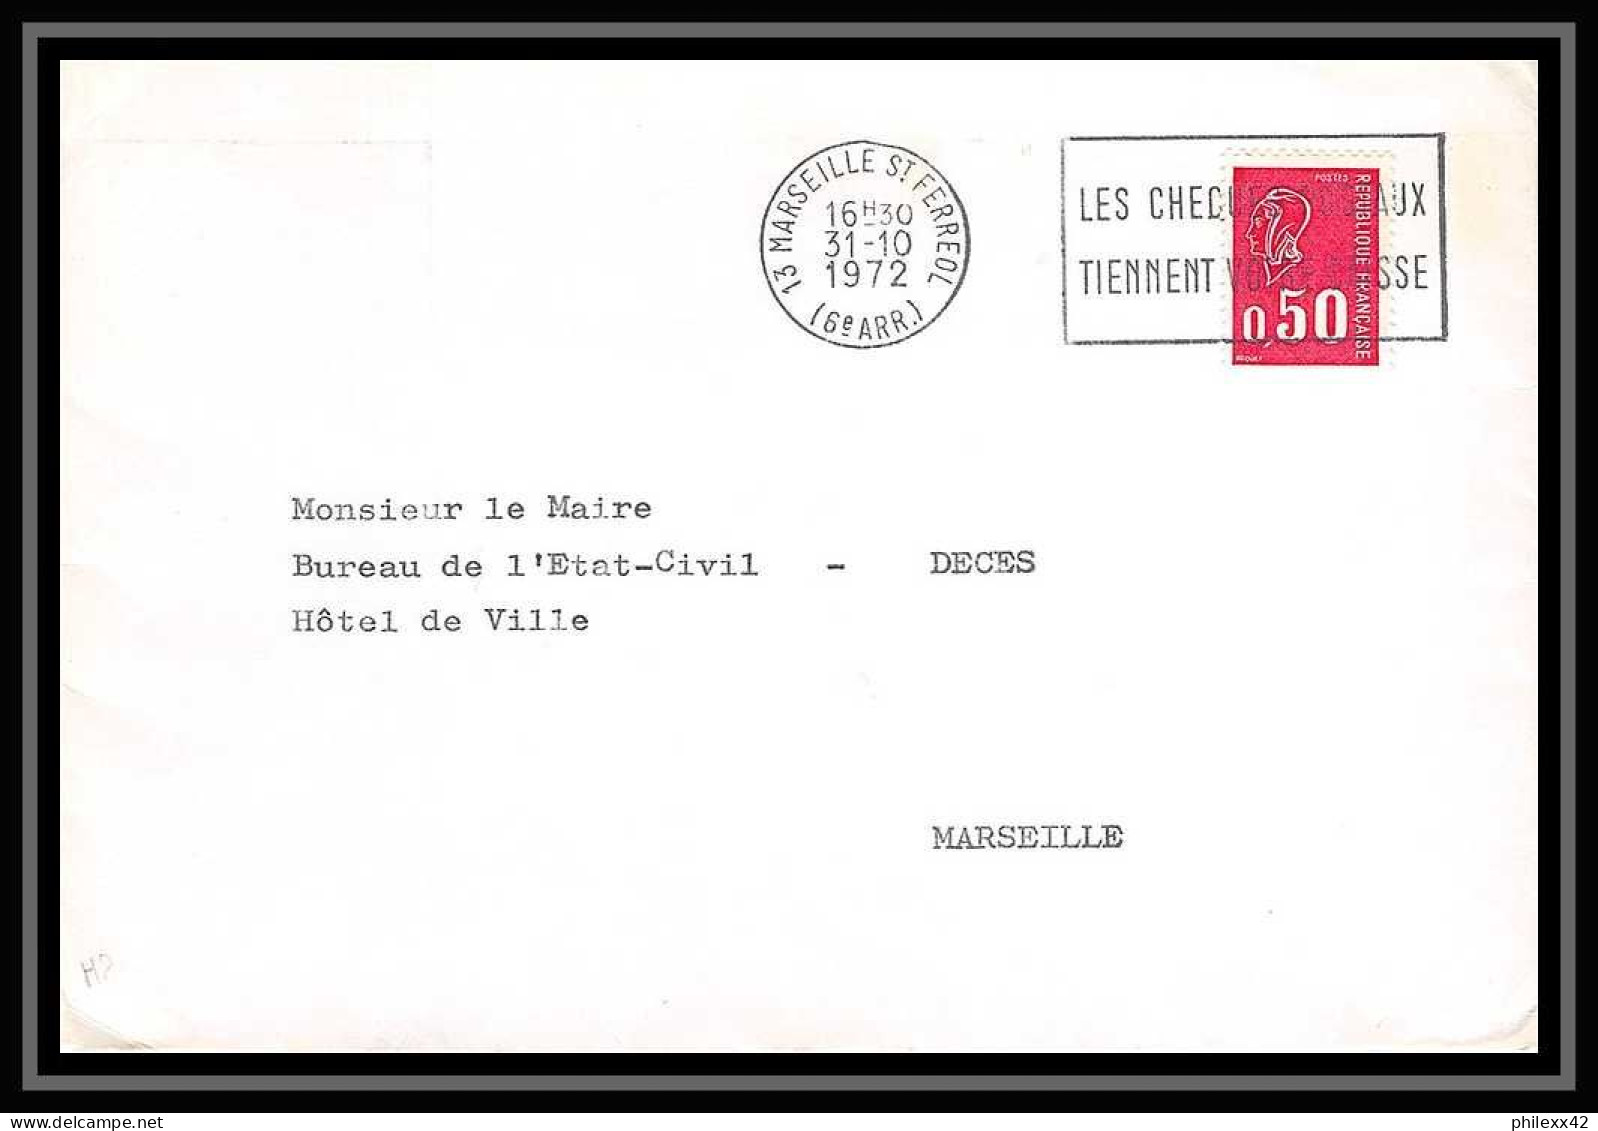 108473 lot de 21 Lettres dont recommandés Bouches du rhone Marseille saint ferréol